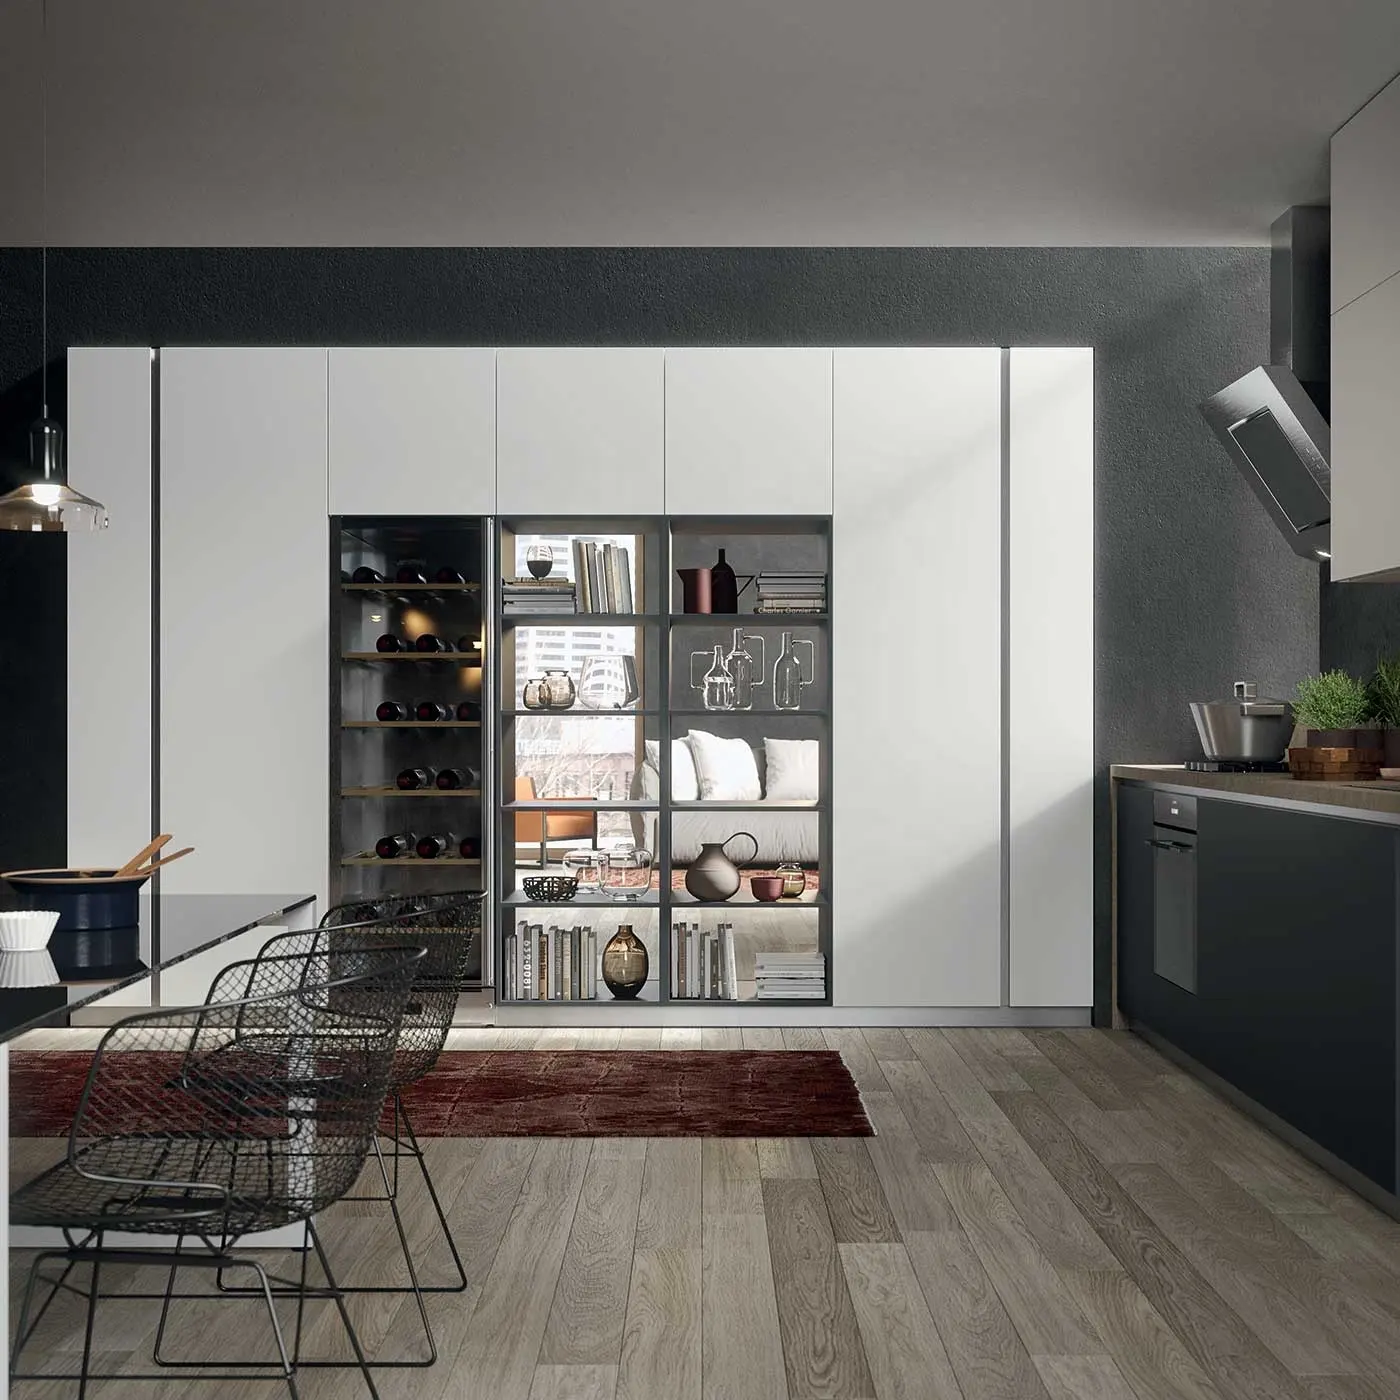 OAT-armarios de cocina modernos de lujo, juego de muebles para el hogar, 3d, diseños modulares personalizados, blanco, alto brillo